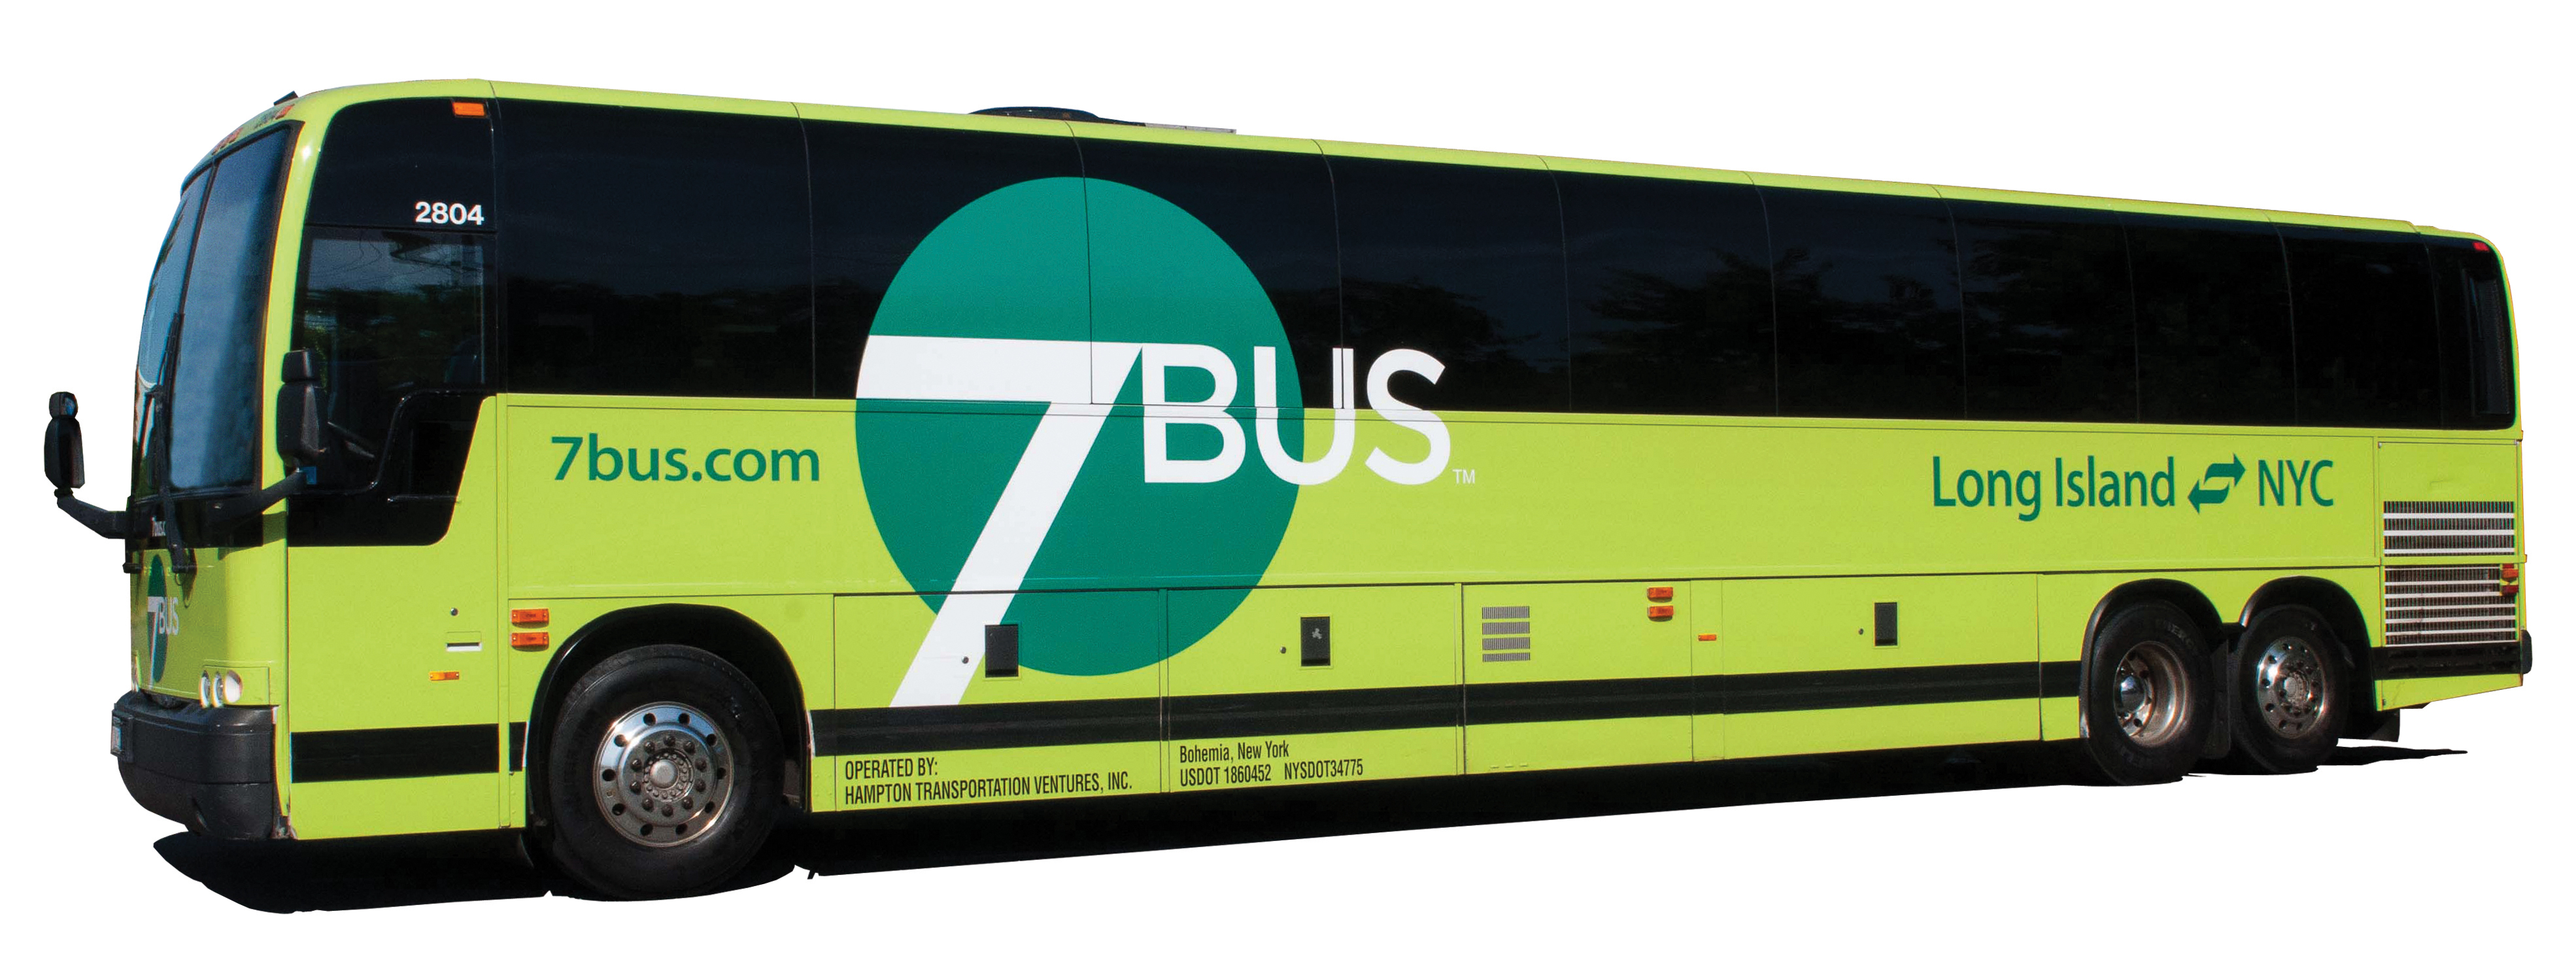 1 июля автобусы. Автобус семерка. Hyundai service автобус. Phuket Travel service автобусы. Seven Days автобусы.